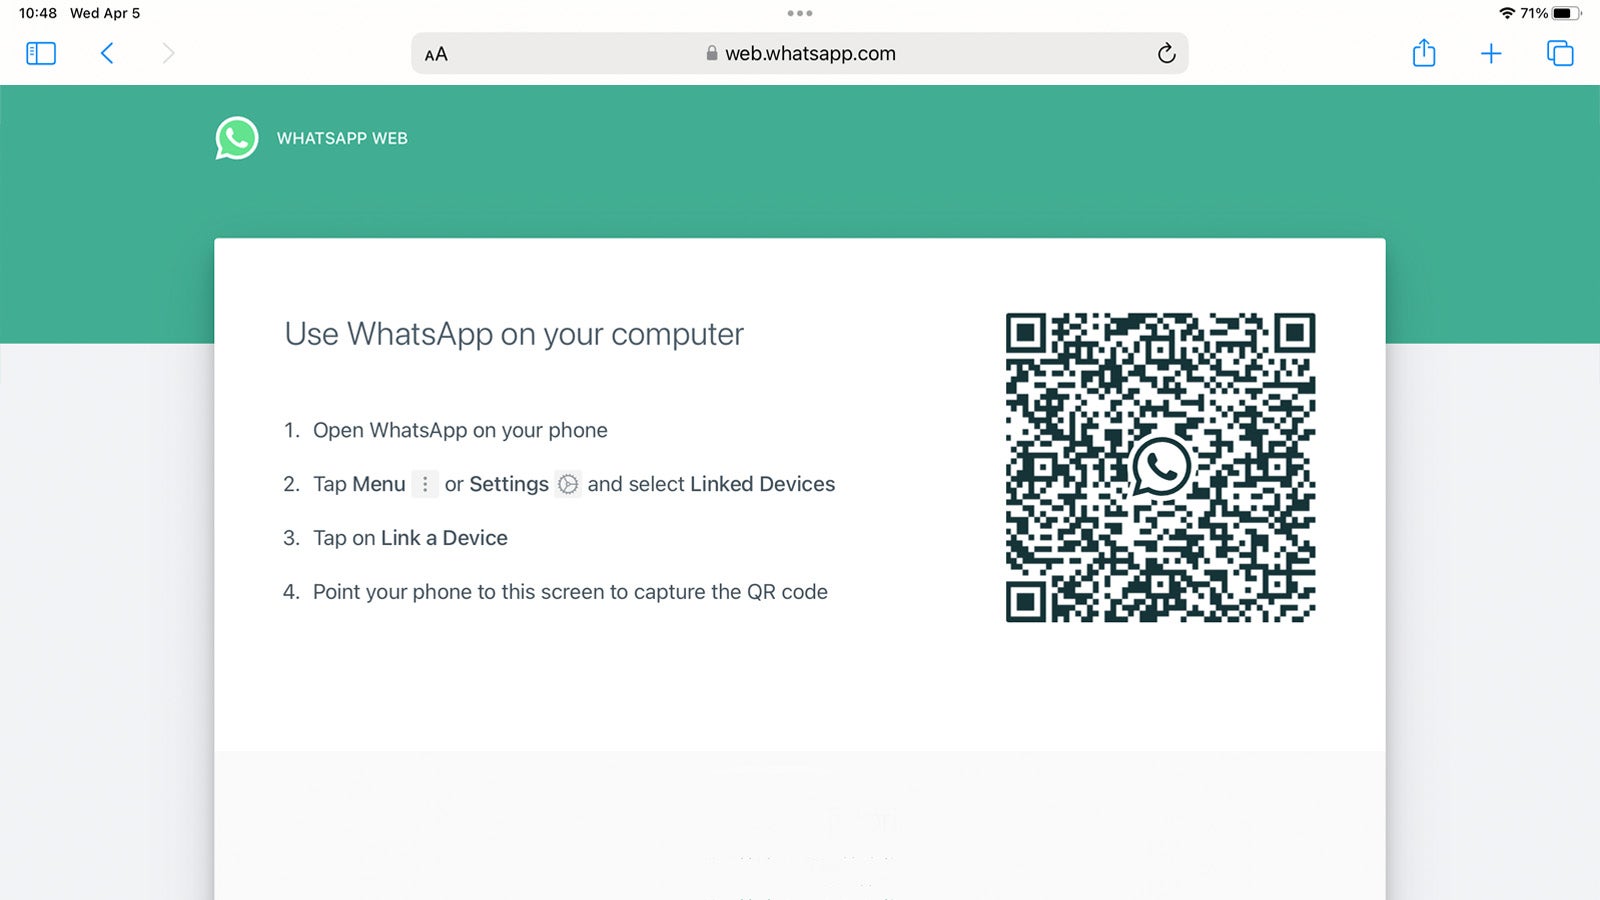 WhatsApp Web on iPad